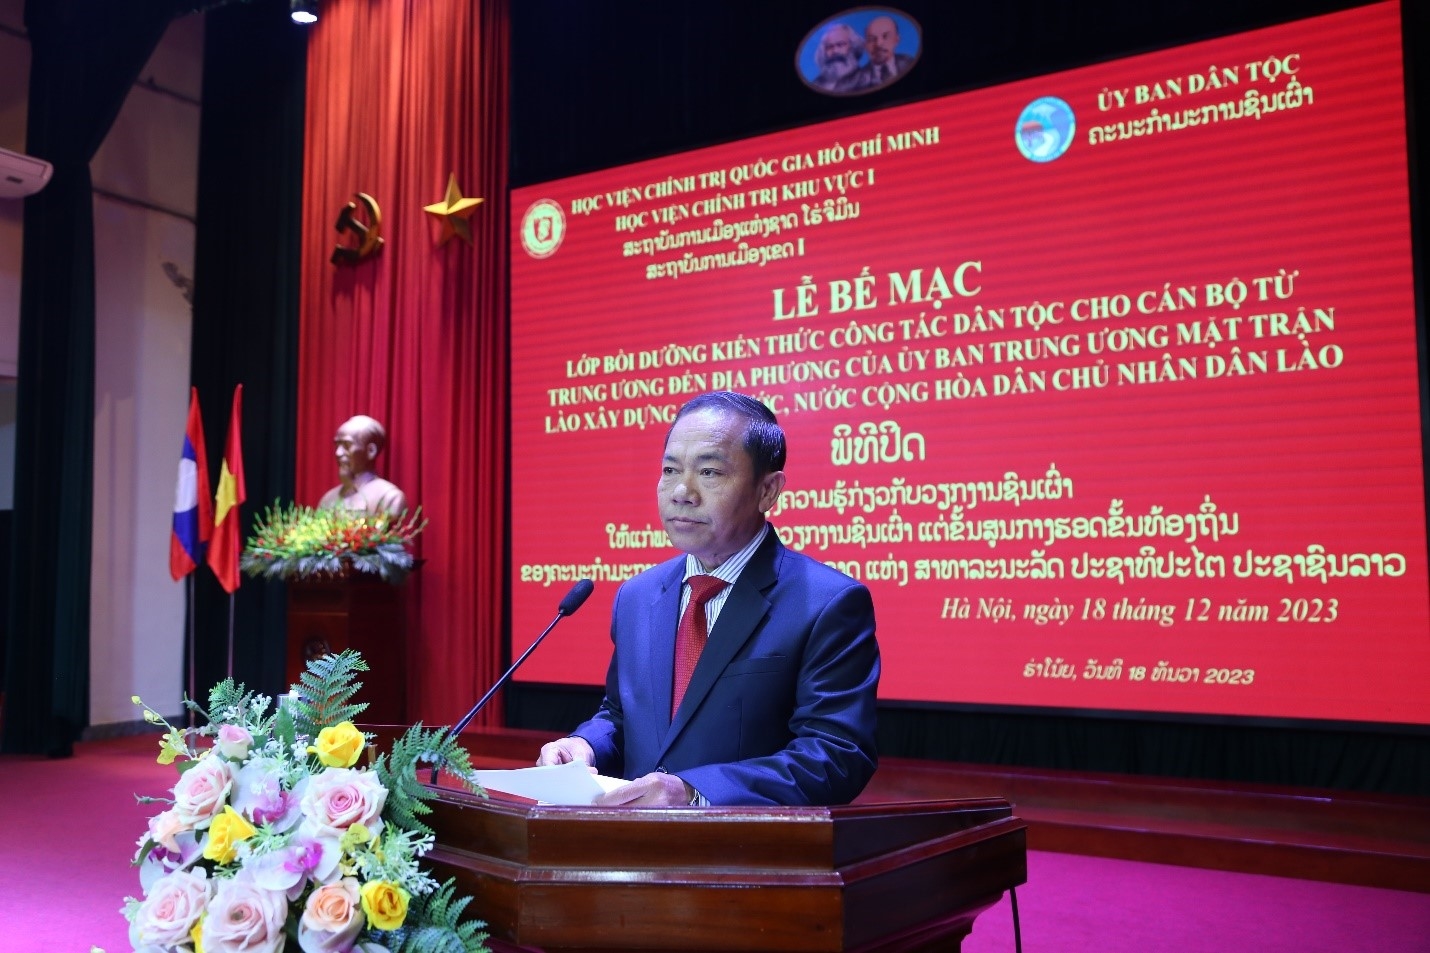 Đồng chí KHAMLAY SIPRASEUTH, Ủy viên Ban Chấp hành Trung ương Đảng Nhân dân Cách mạng Lào, Phó Chủ tịch Thường trực Ủy ban Trung ương Mặt trận Lào phát biểu